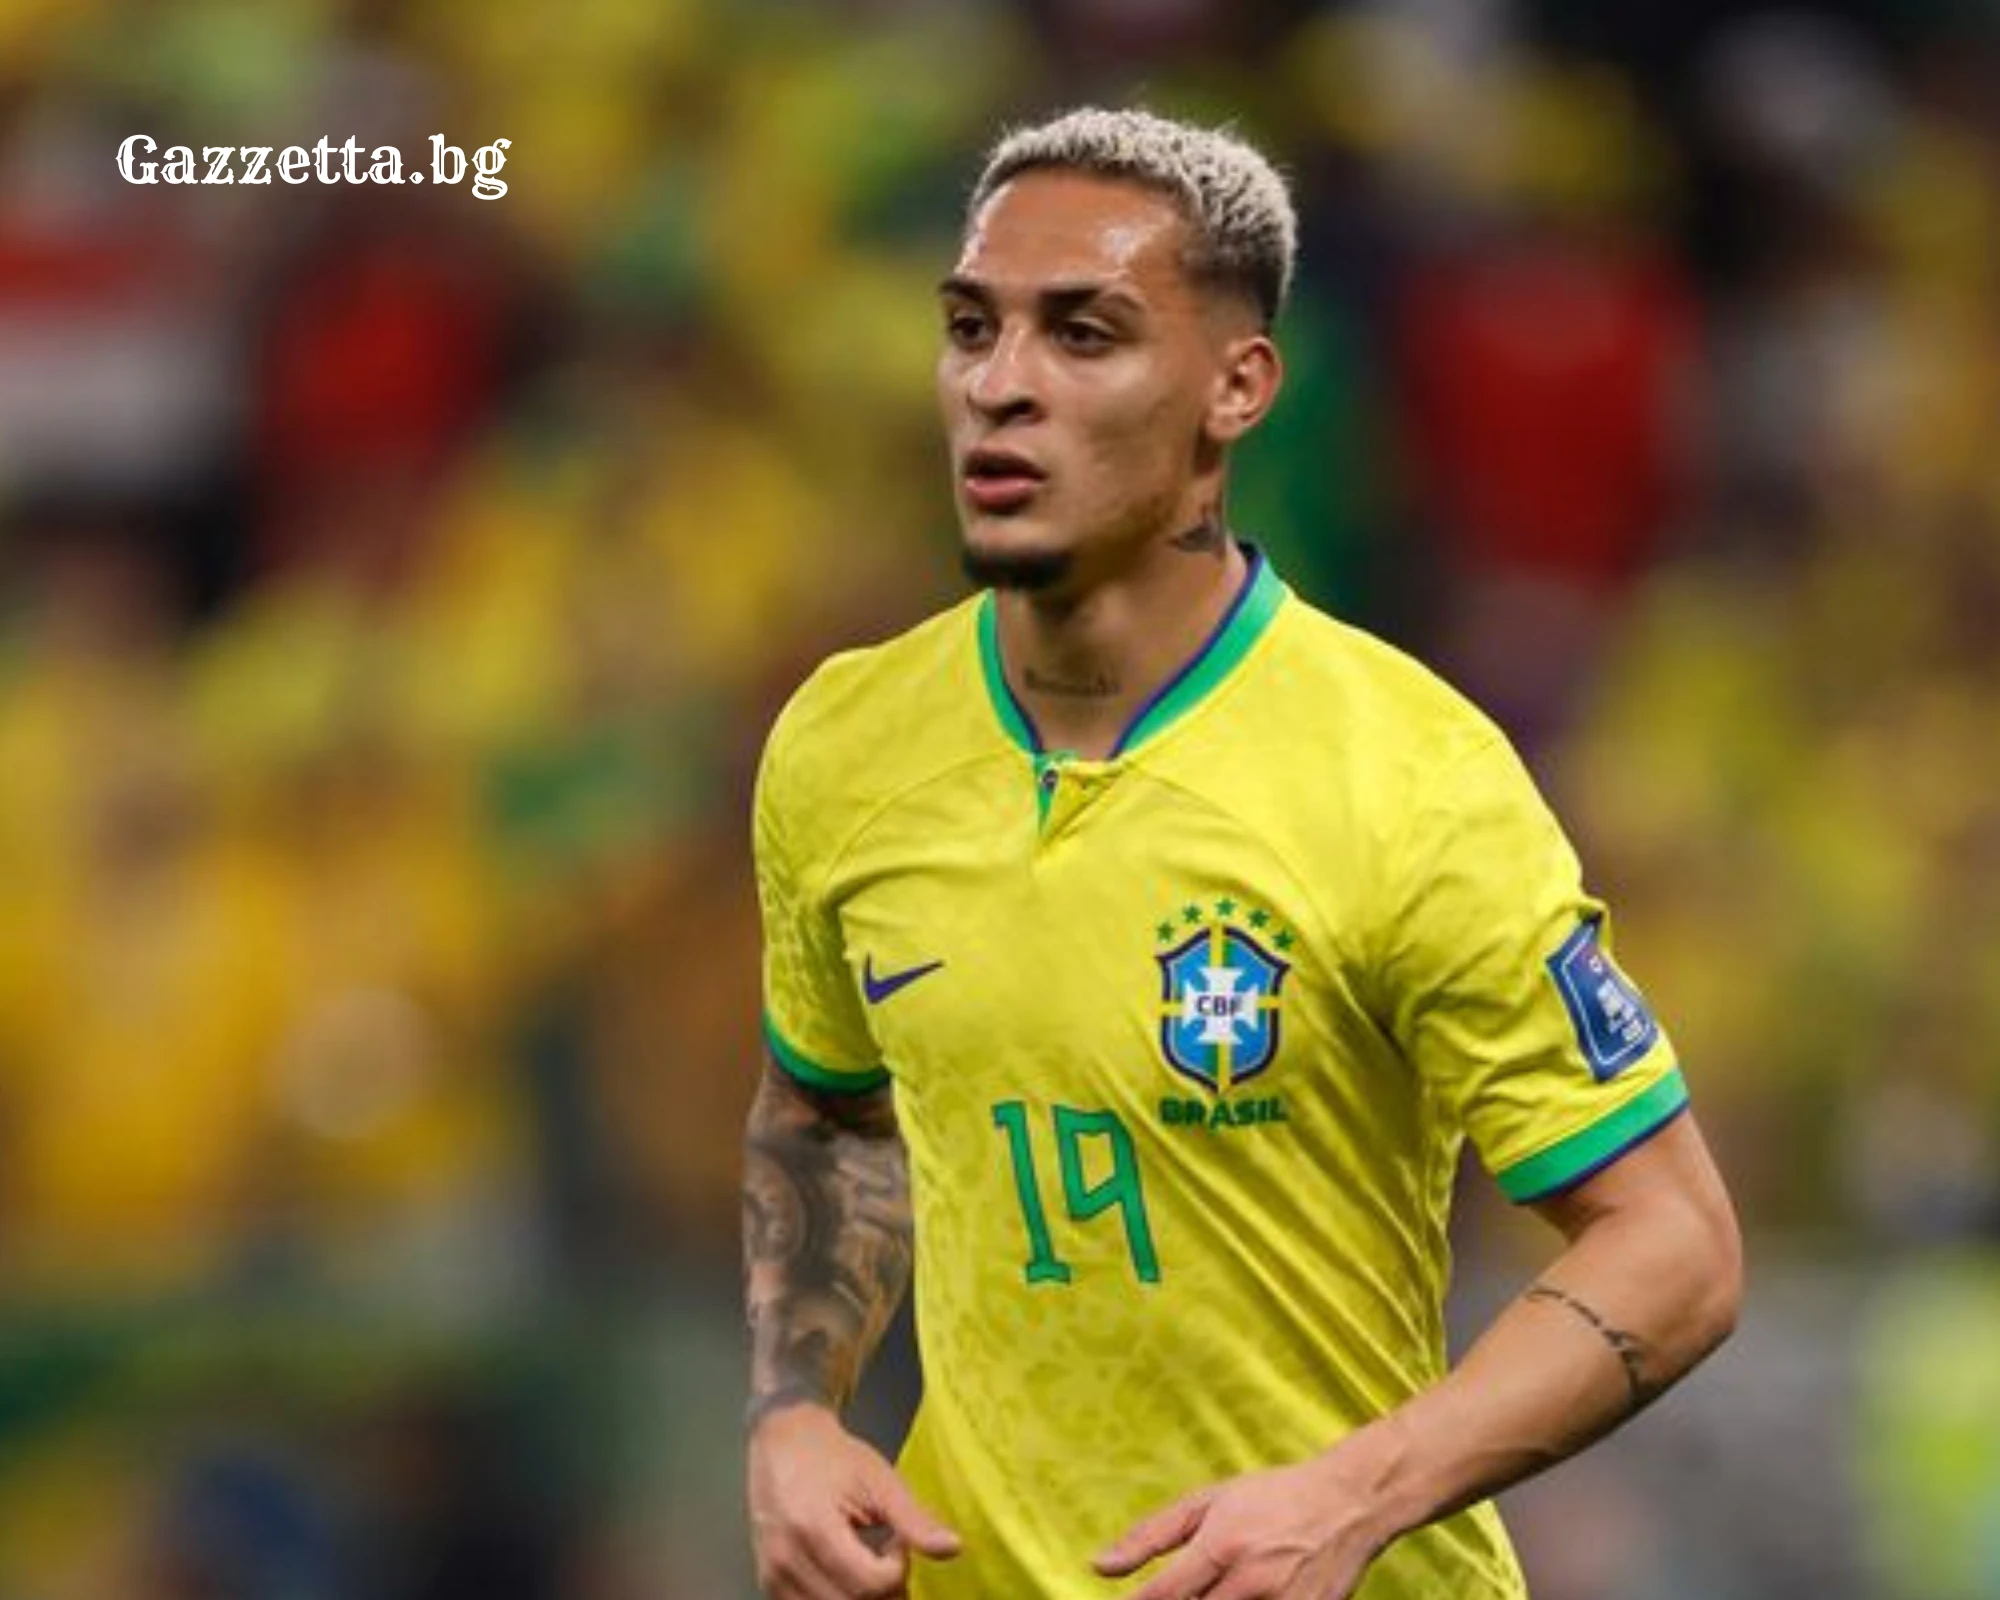 Бразилия изхвърли Антони от националния отбор